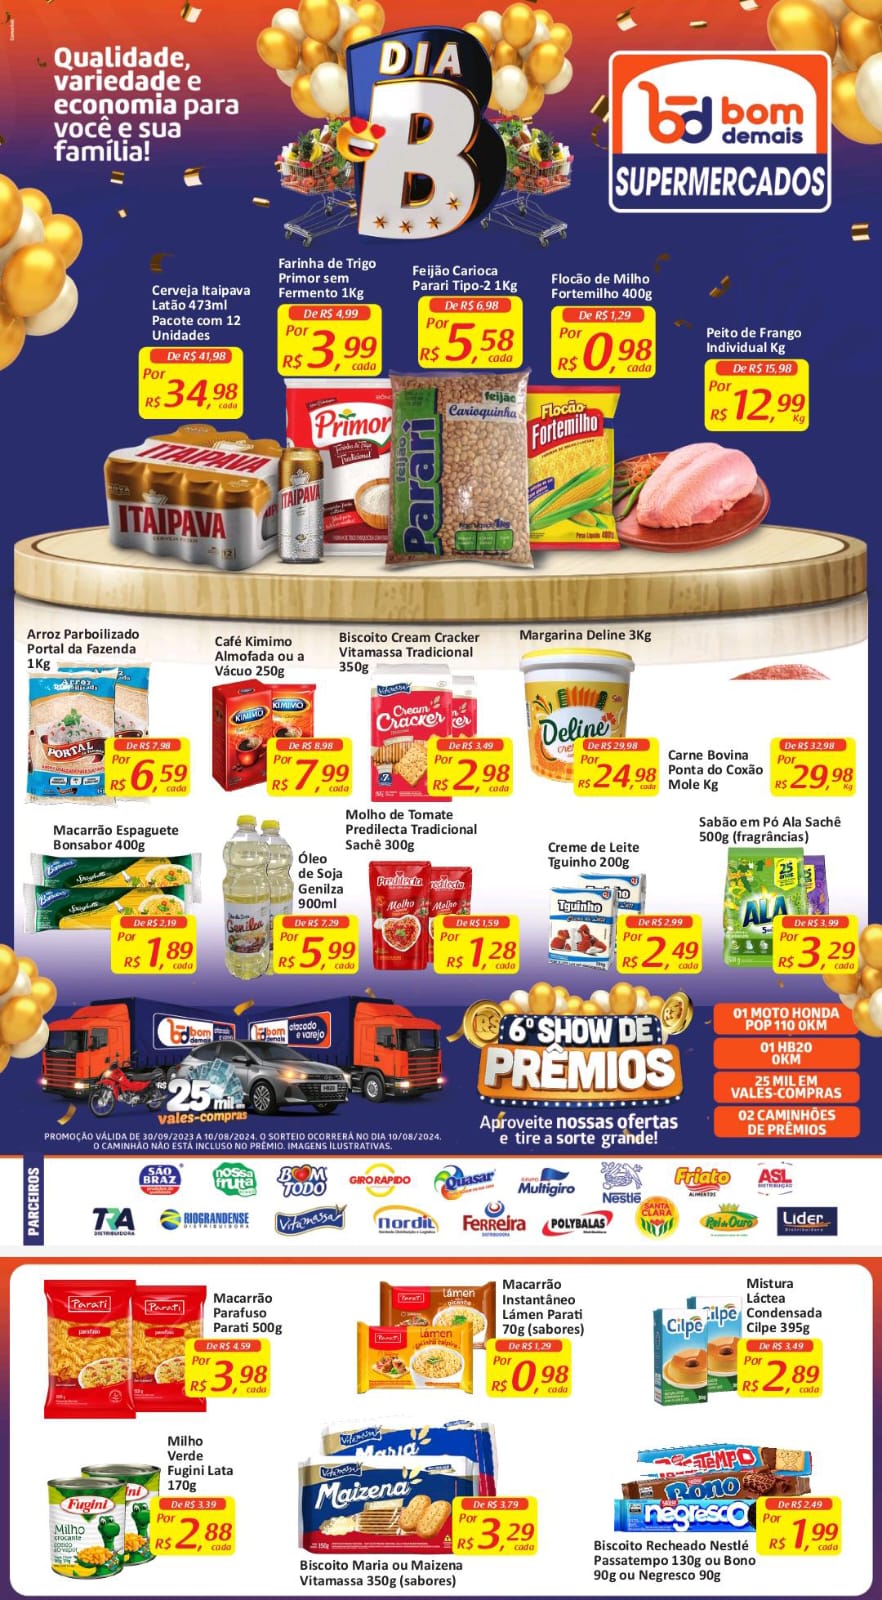 IMG-20240528-WA0112 "Dia B" O BOM DEMAIS Supermercados promove dois dias de Ofertas Exclusivas 